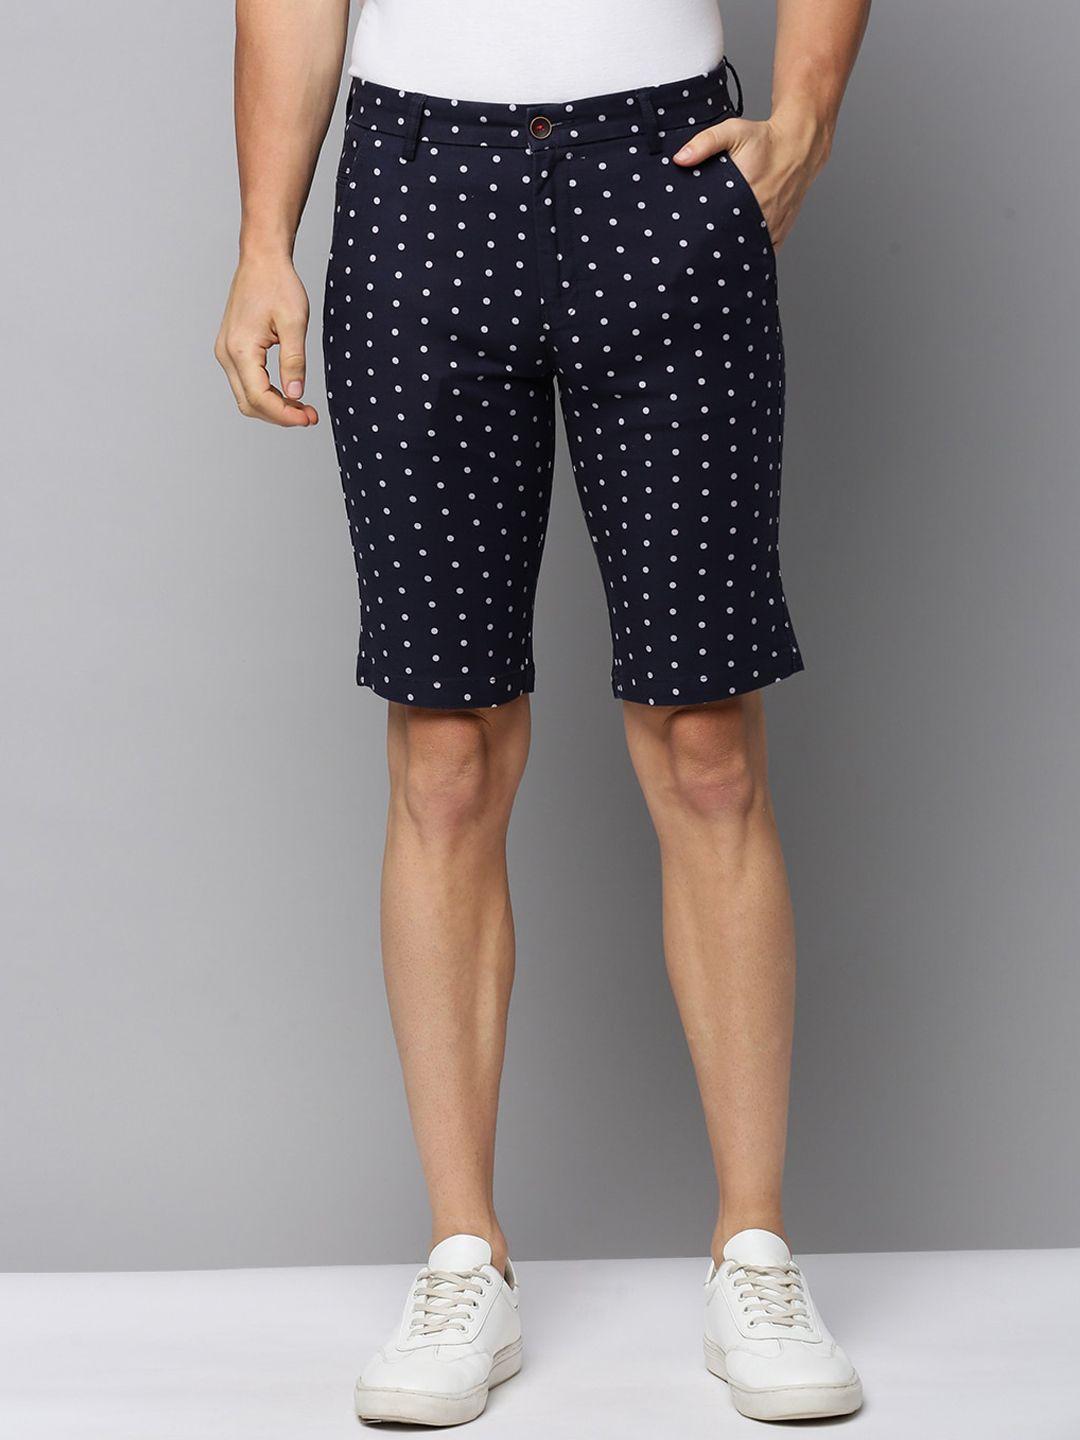 showoff-men-polka-dots-printed-cotton-shorts